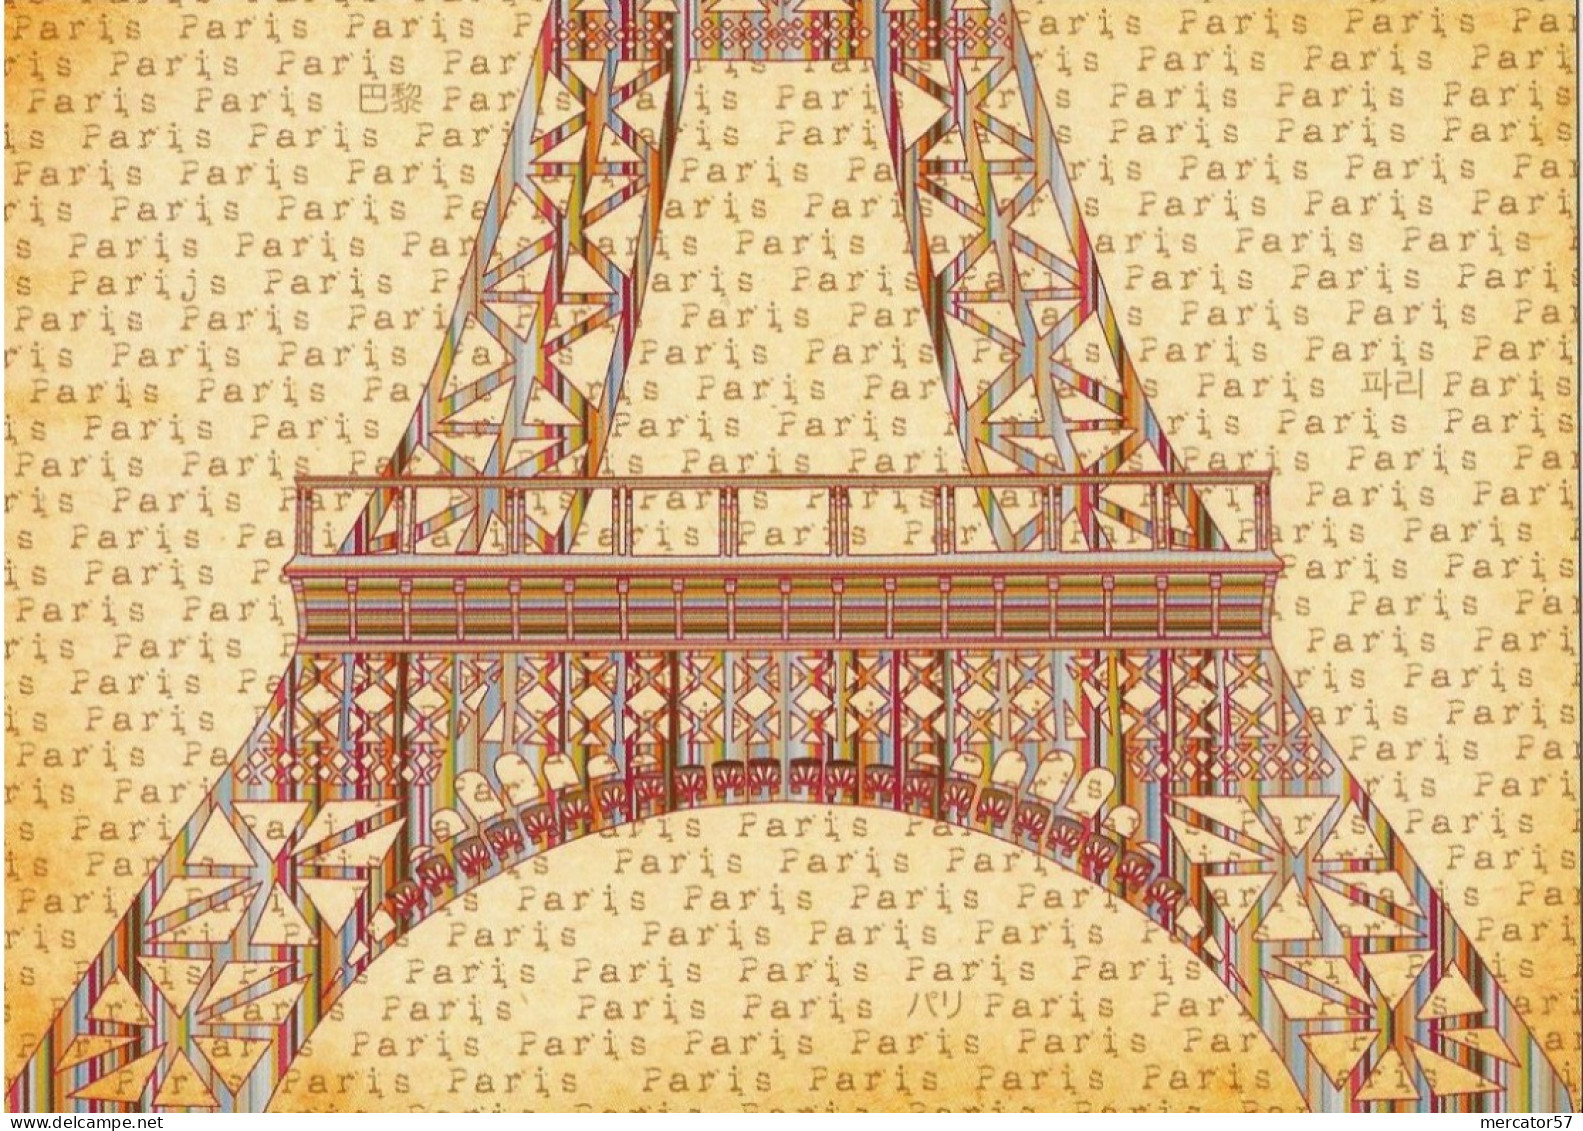 CPM PARIS Tour Eiffel - Contemporain (à Partir De 1950)